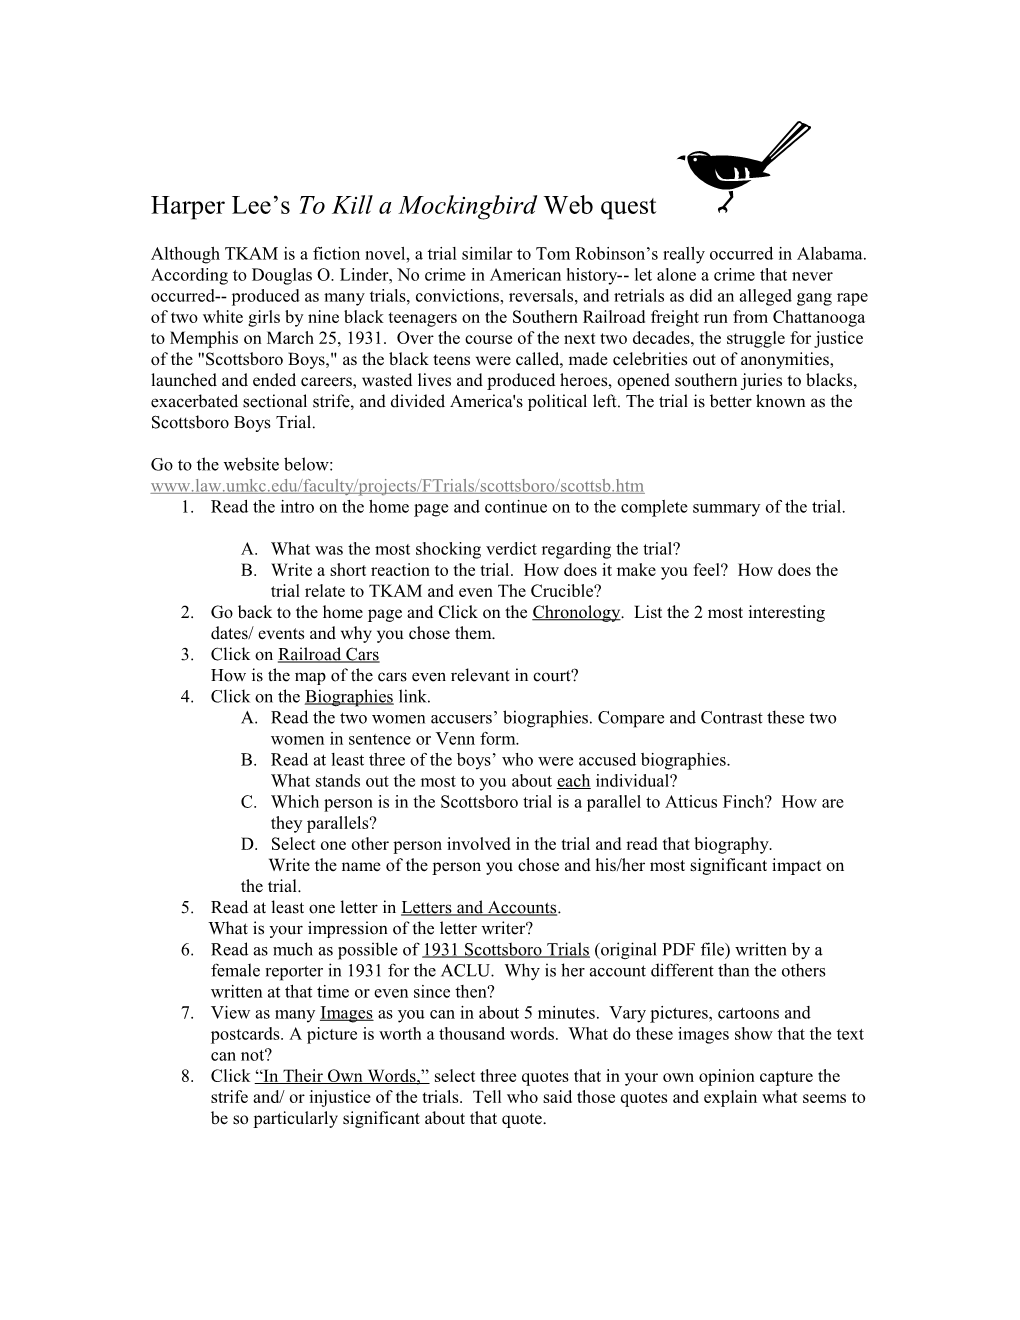 Harper Lee S to Kill a Mockingbird Webquest